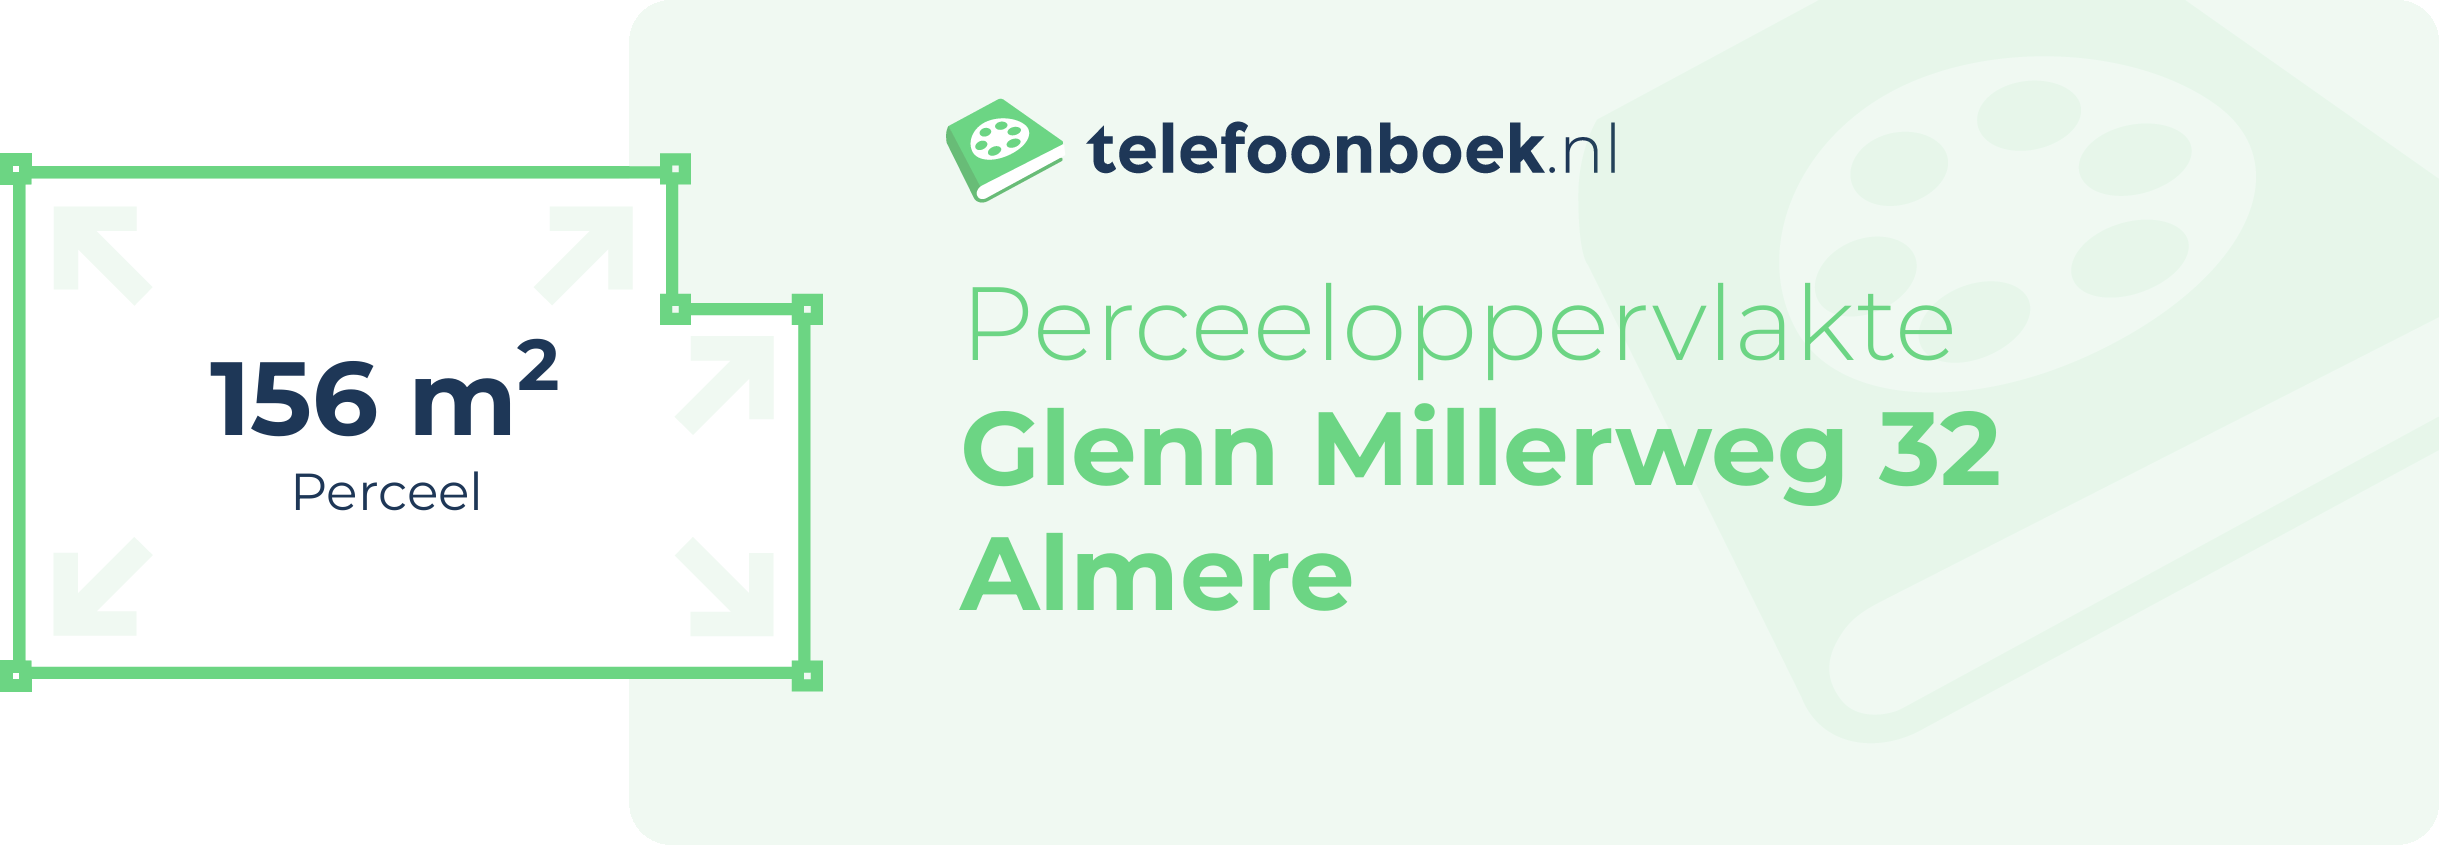 Perceeloppervlakte Glenn Millerweg 32 Almere